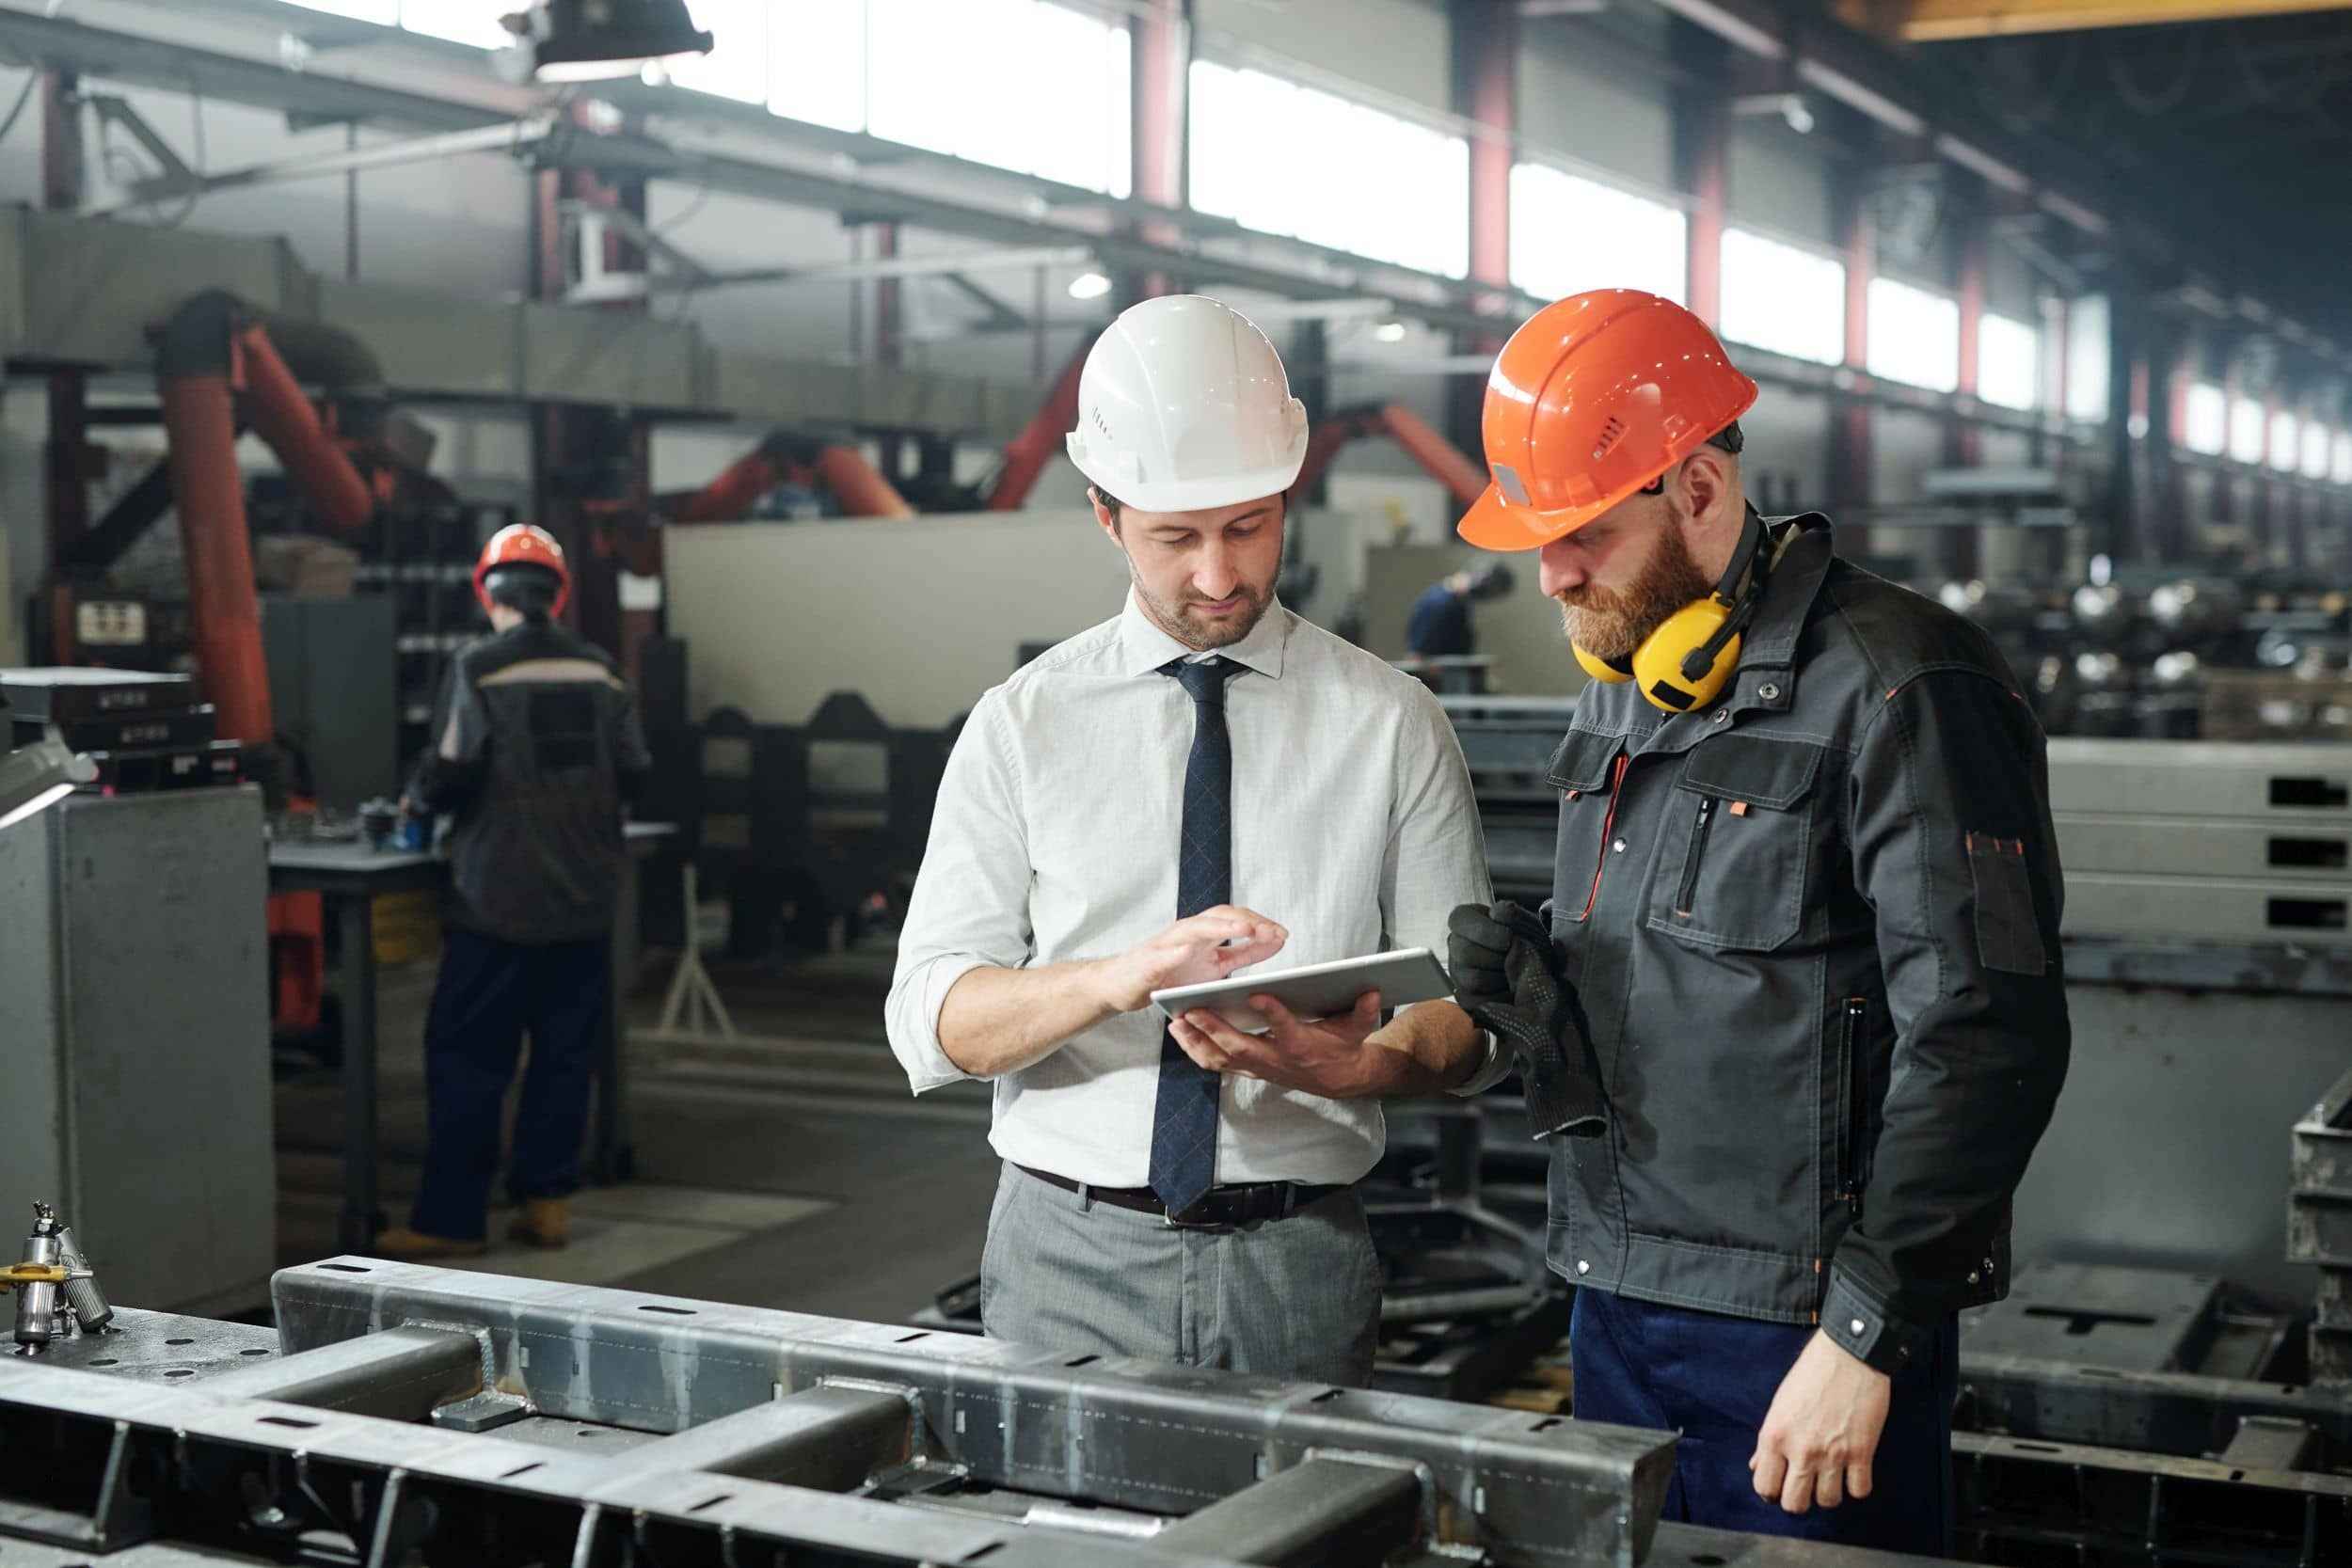 Fokusbranche Maschinenbau und Metallverarbeitung, Baustein Sachversicherung: 2 Mitarbeitende mit Helm in Fabrikhalle konfigurieren eine Maschine.